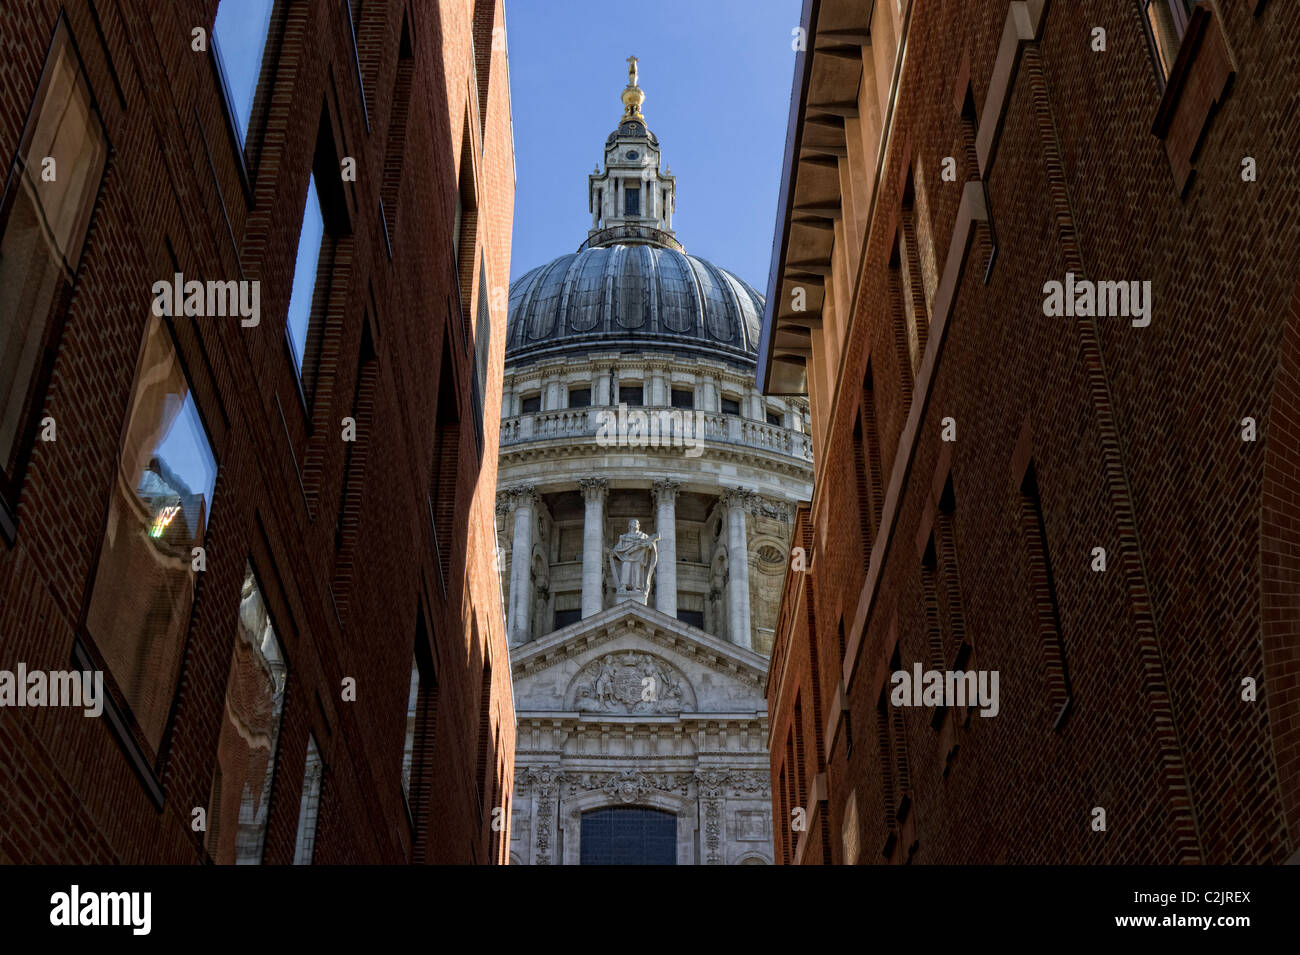 Kuppel der St. Pauls Kathedrale gesehen zwischen zwei Gebäuden, London, England, UK Stockfoto